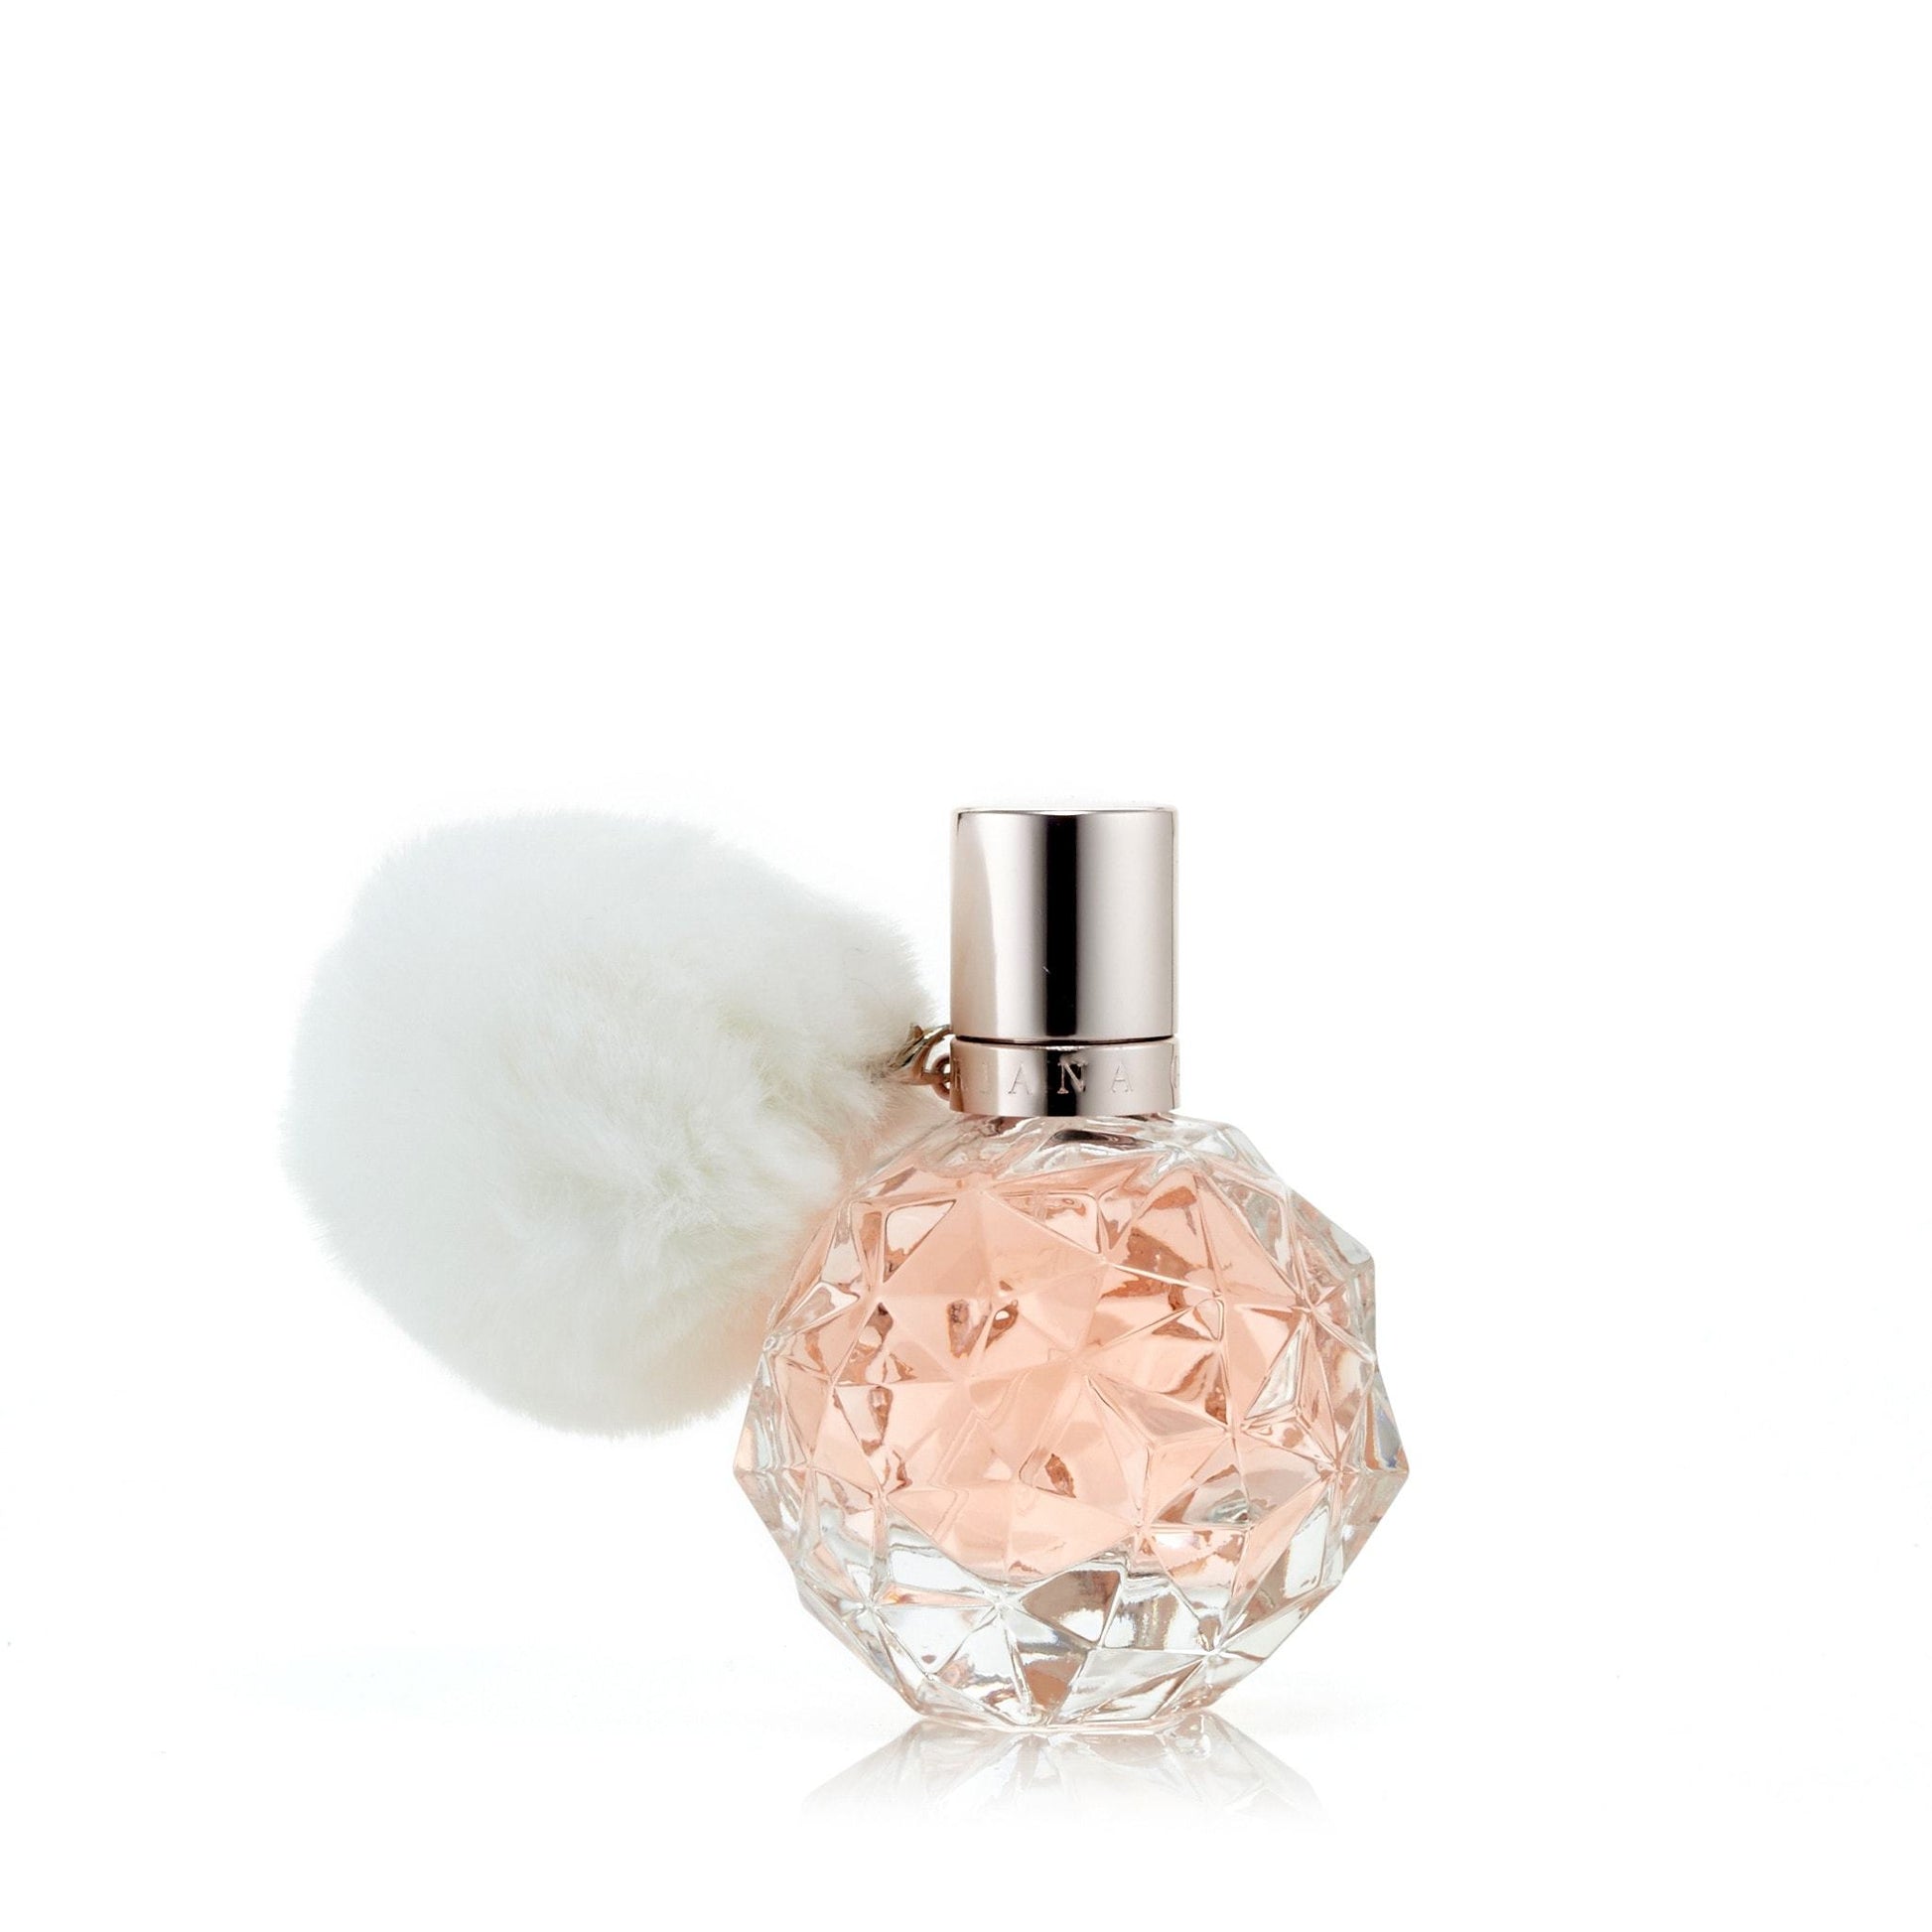 Ari Eau de Parfum Spray for Women by Ariana Grande, Product image 4